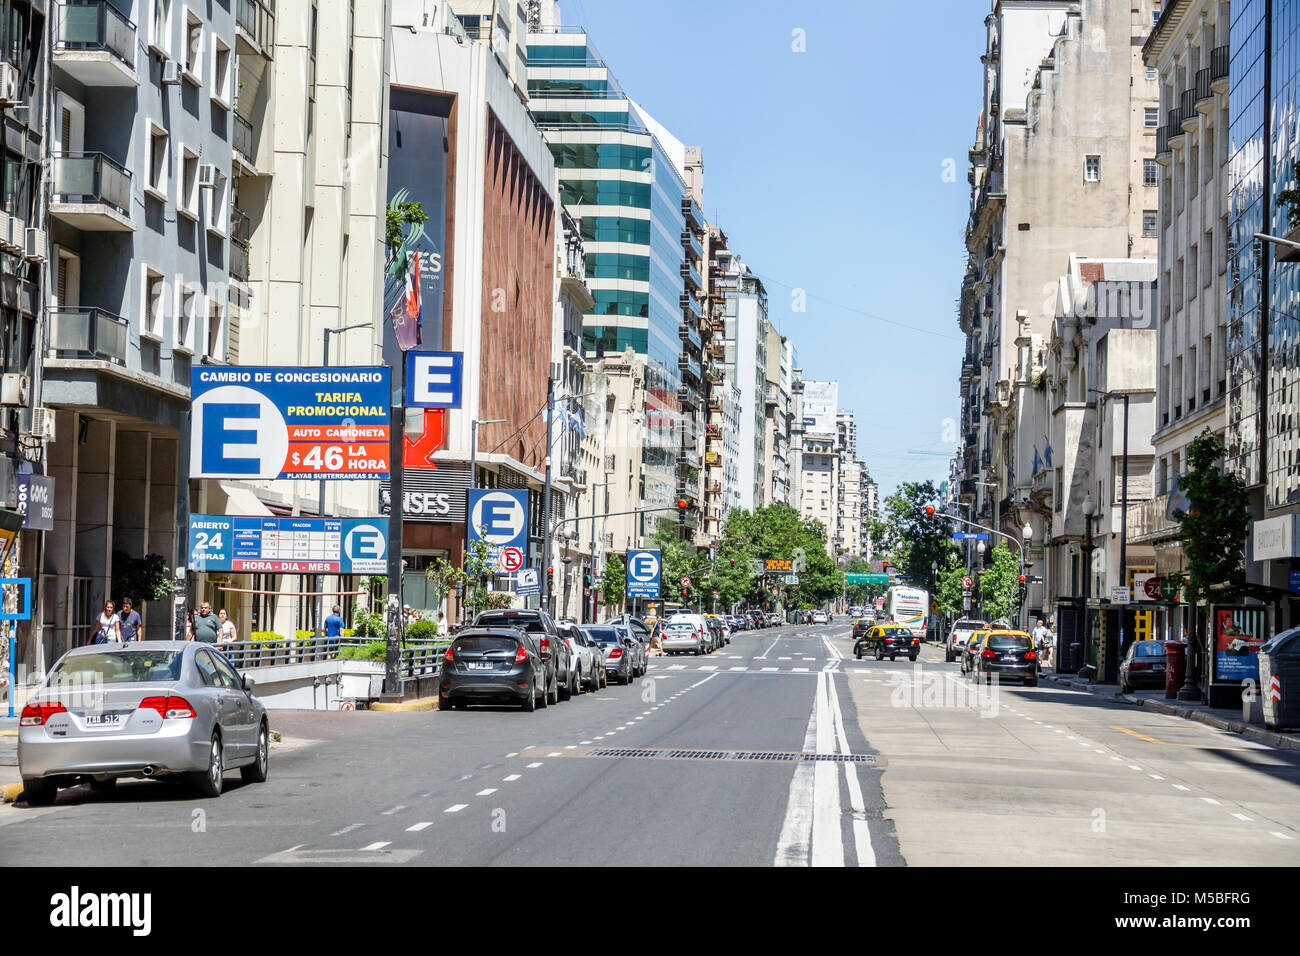 Buenos Aires Argentina, Avenida Cordoba, vista sulla strada, auto parcheggiate, edifici, ingresso garage sotterraneo, cartello, ARG171128002 Foto Stock